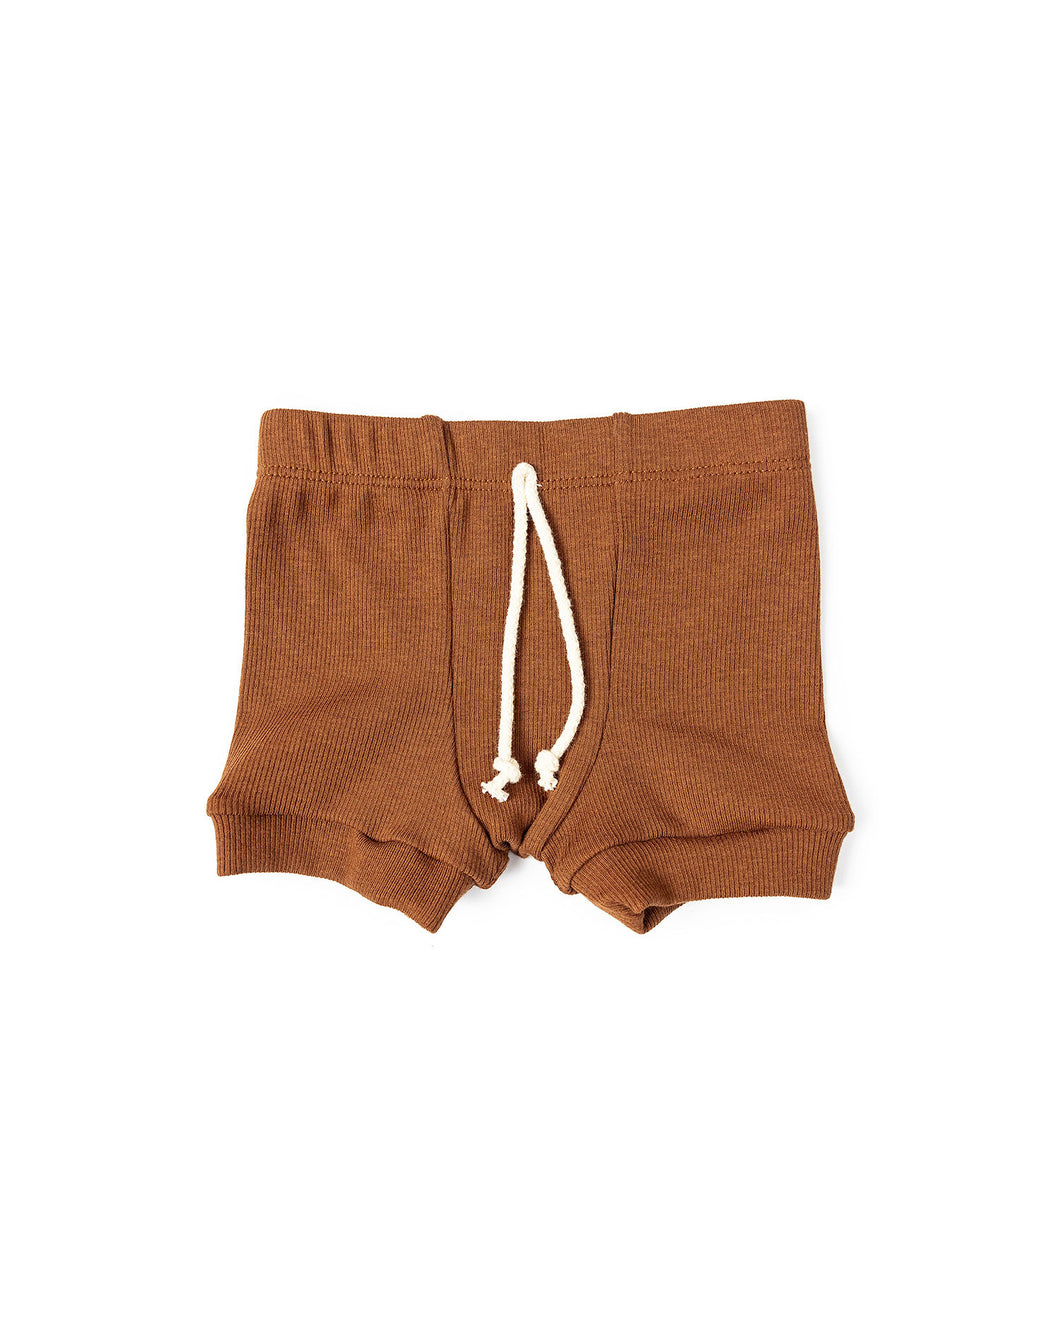 rib knit shorts - cognac tri blend